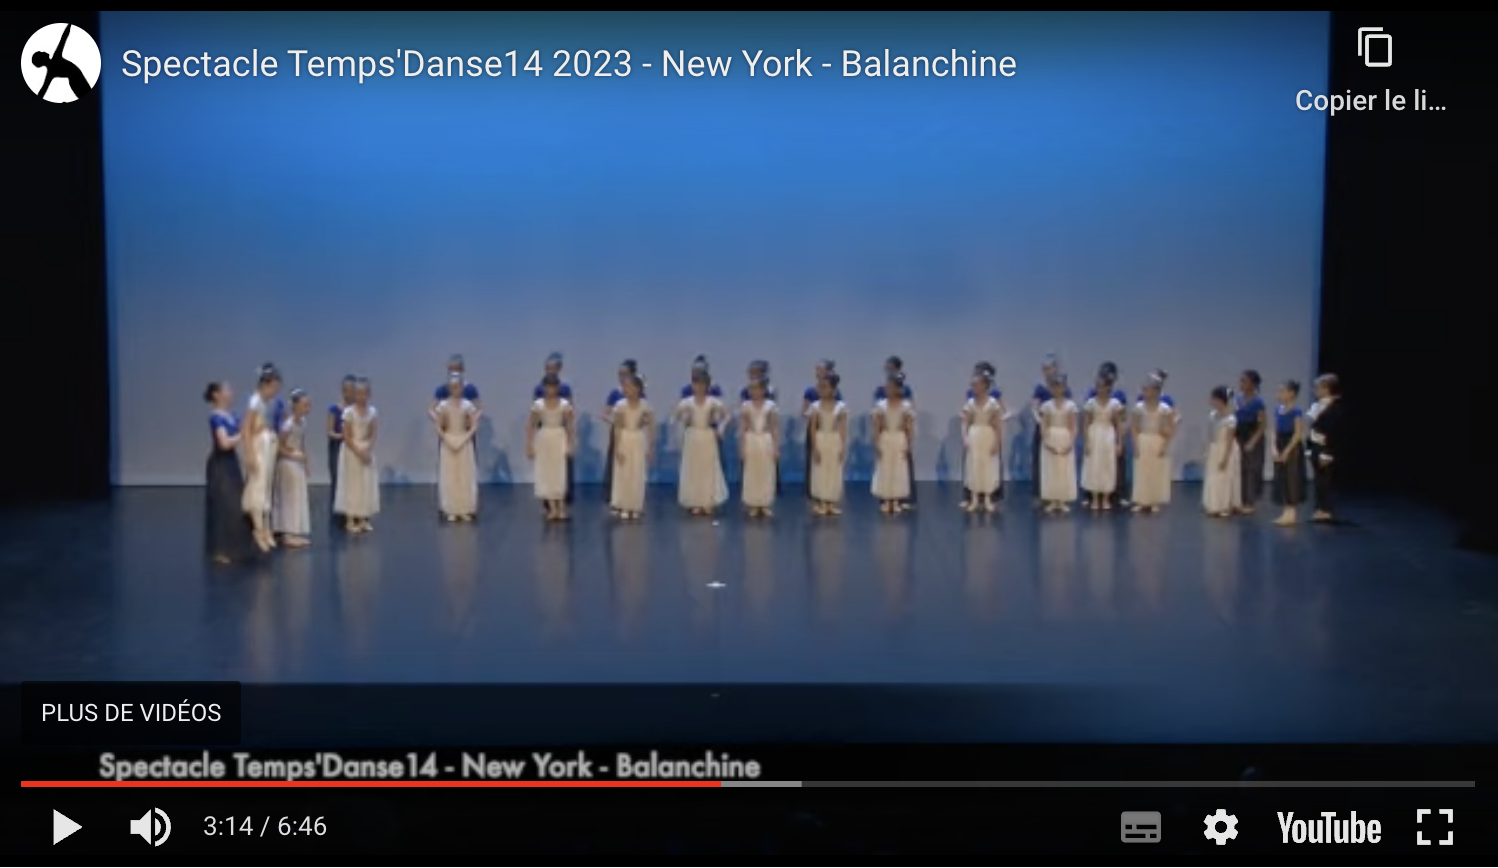 New York - Balanchine